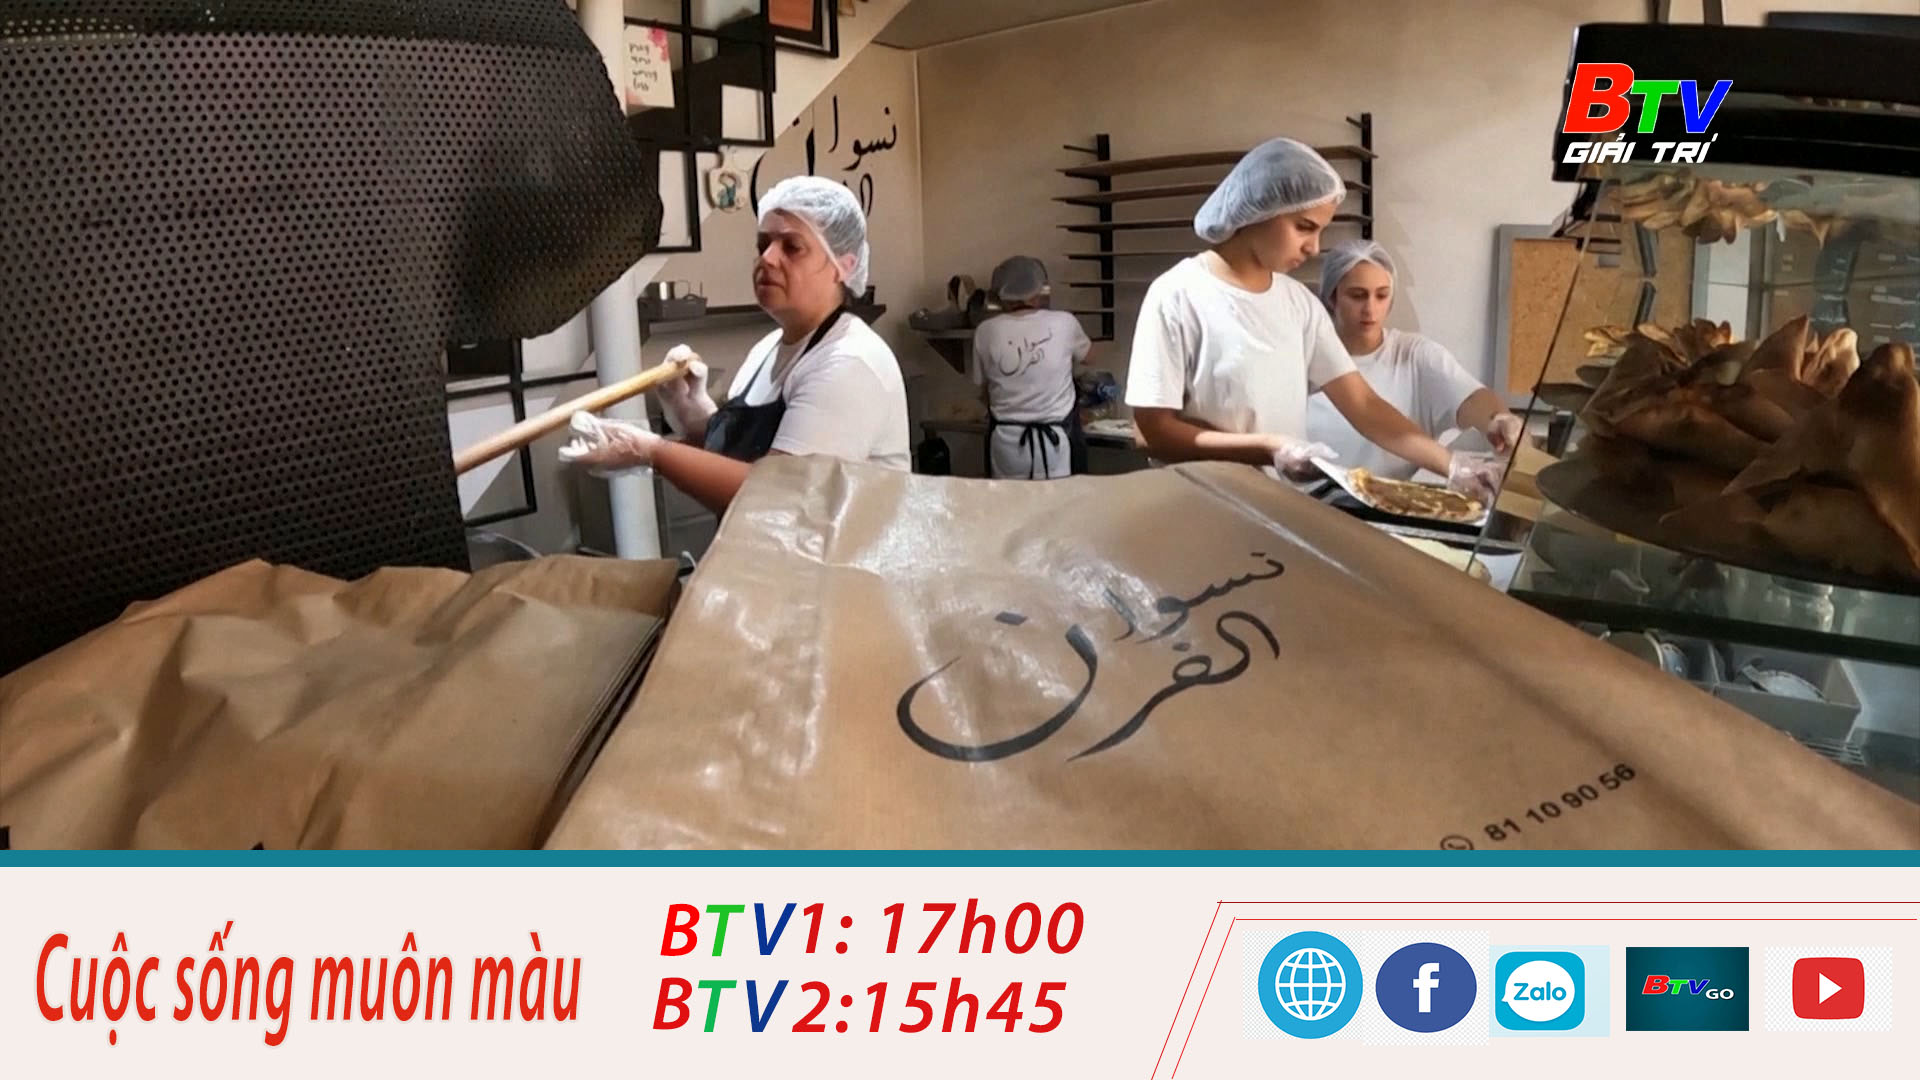 Libannon – Khởi nghiệp kinh doanh bánh trong khủng hoảng kinh tế